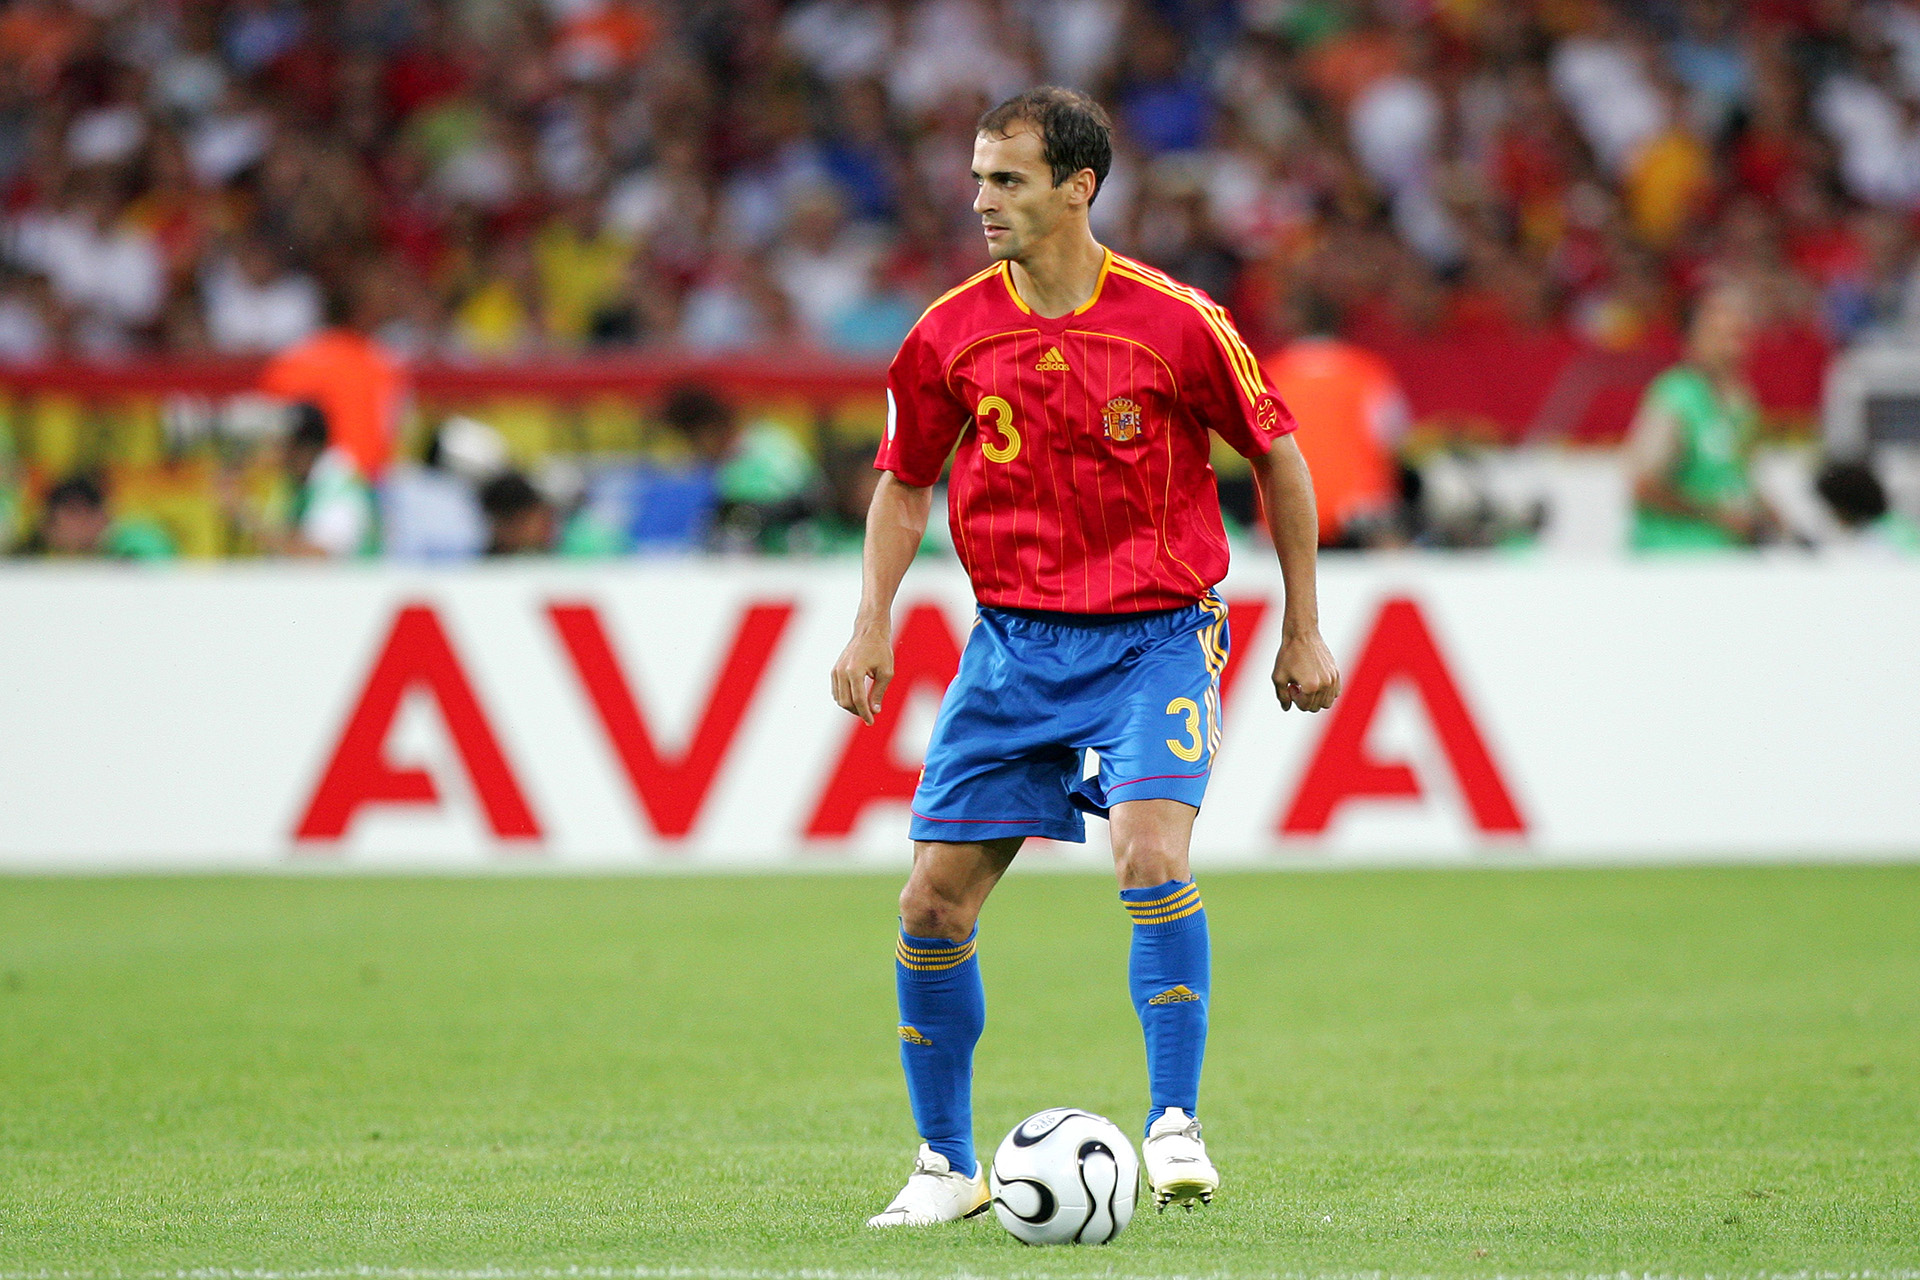 Pernía jugó el Mundial Alemania 2006 para España y formó parte del inicio de la era dorada de esa selección (Photo by Eddy LEMAISTRE/Corbis via Getty Images)